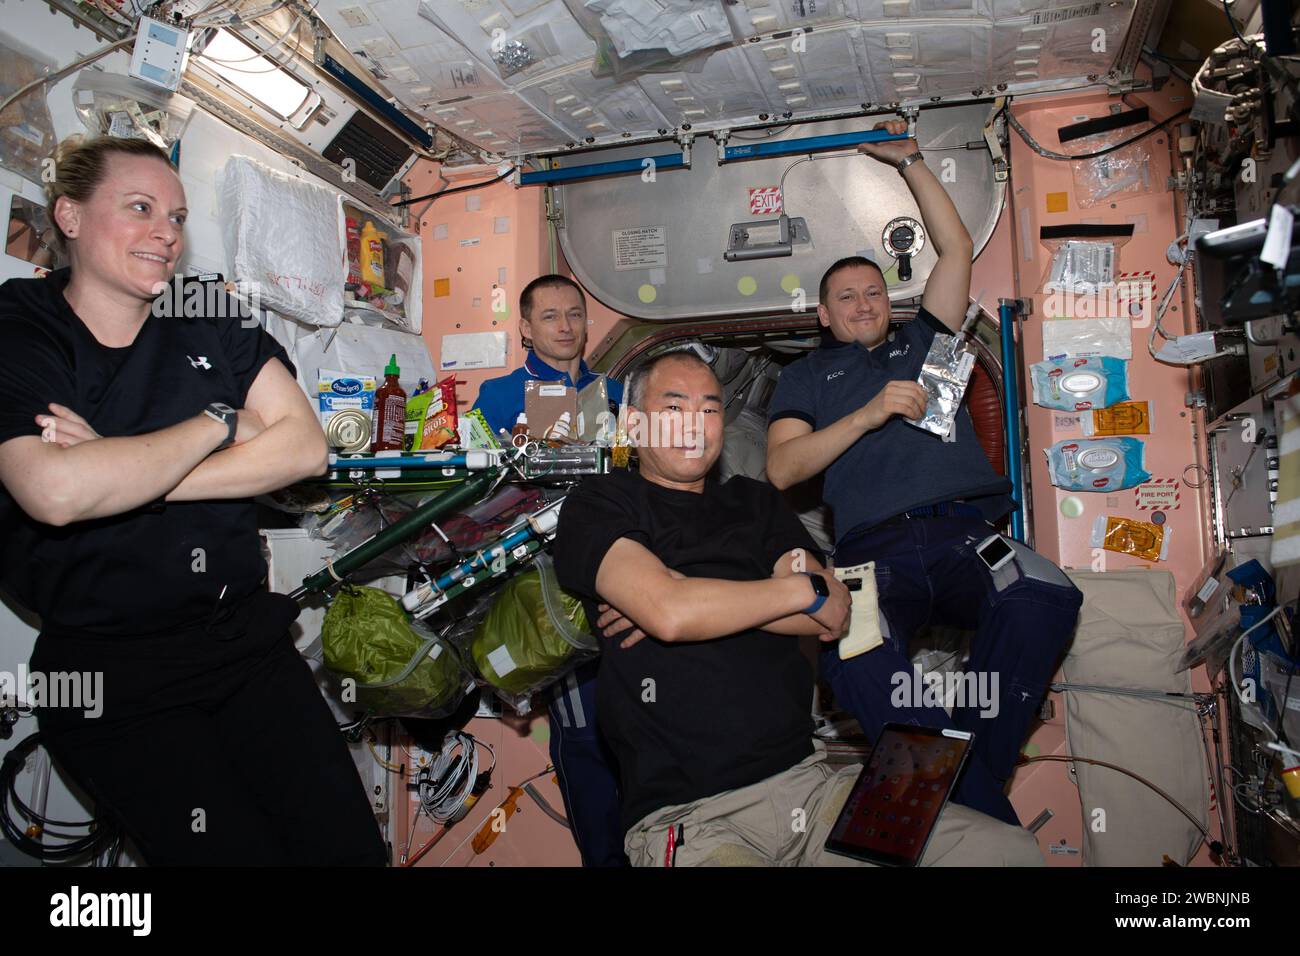 Iss064e009895 (4. Dezember 2020) --- vier Besatzungsmitglieder der Expedition 64 werden nach einer Mahlzeit am Ende des Arbeitstages im Unity-Modul entspannt dargestellt. Von links sind NASA-Astronaut Kate Rubins, Roscosmos-Kosmonaut und Stationskommandeur Sergej Ryzhikow, JAXA-Astronaut Soichi Noguchi und Roscosmos-Kosmonaut Sergej Kud-Swerchkov. Stockfoto